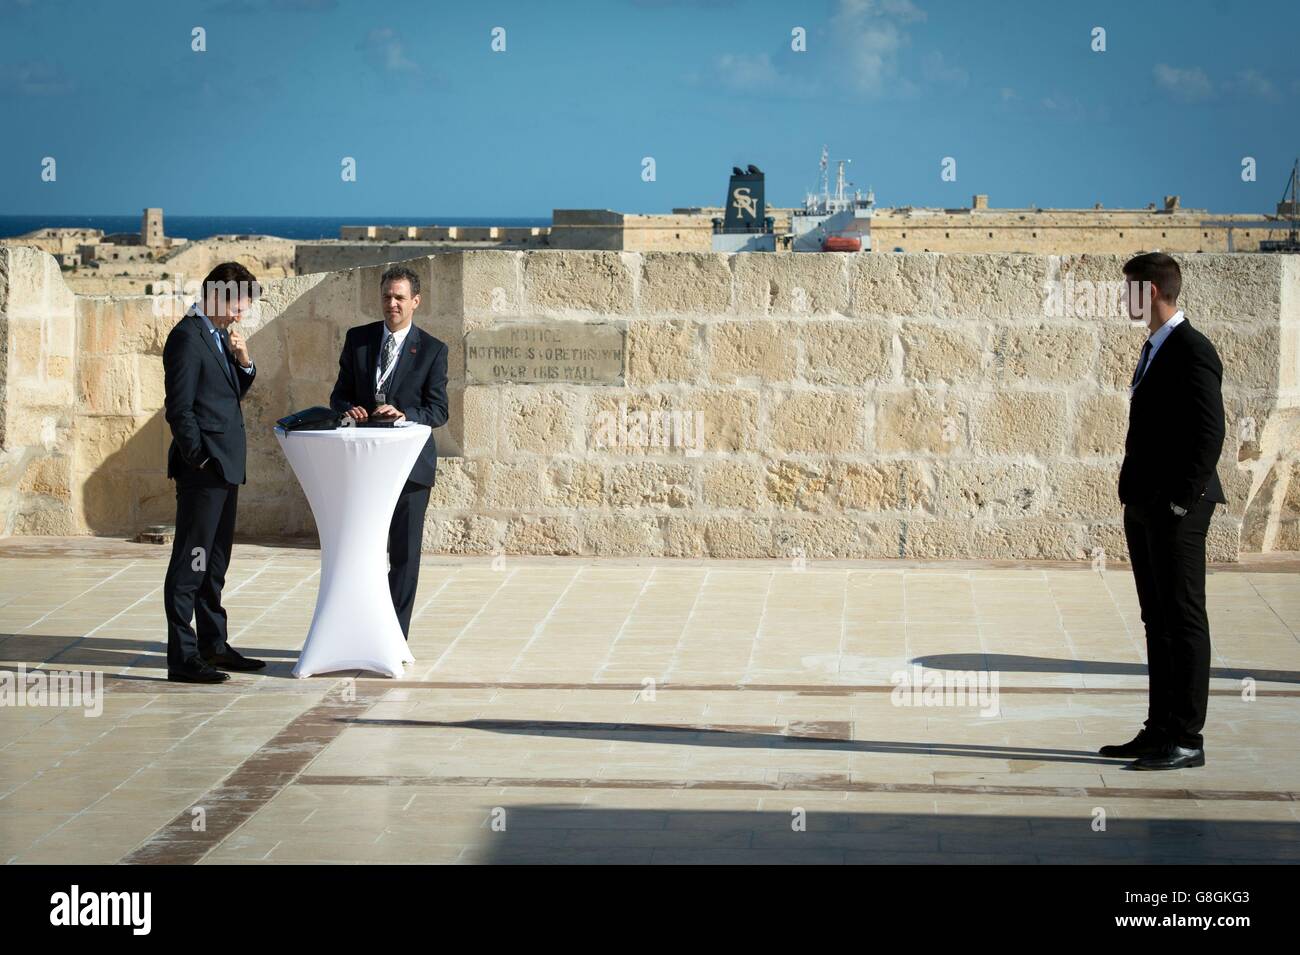 Il primo ministro canadese Justin Trudeau (sinistra) parla con un aiuto a Fort Angelo in Valletta, prima di una sessione di lavoro con altri leader del Commonwealth durante l'incontro dei Capi di Governo del Commonwealth a Malta. Foto Stock